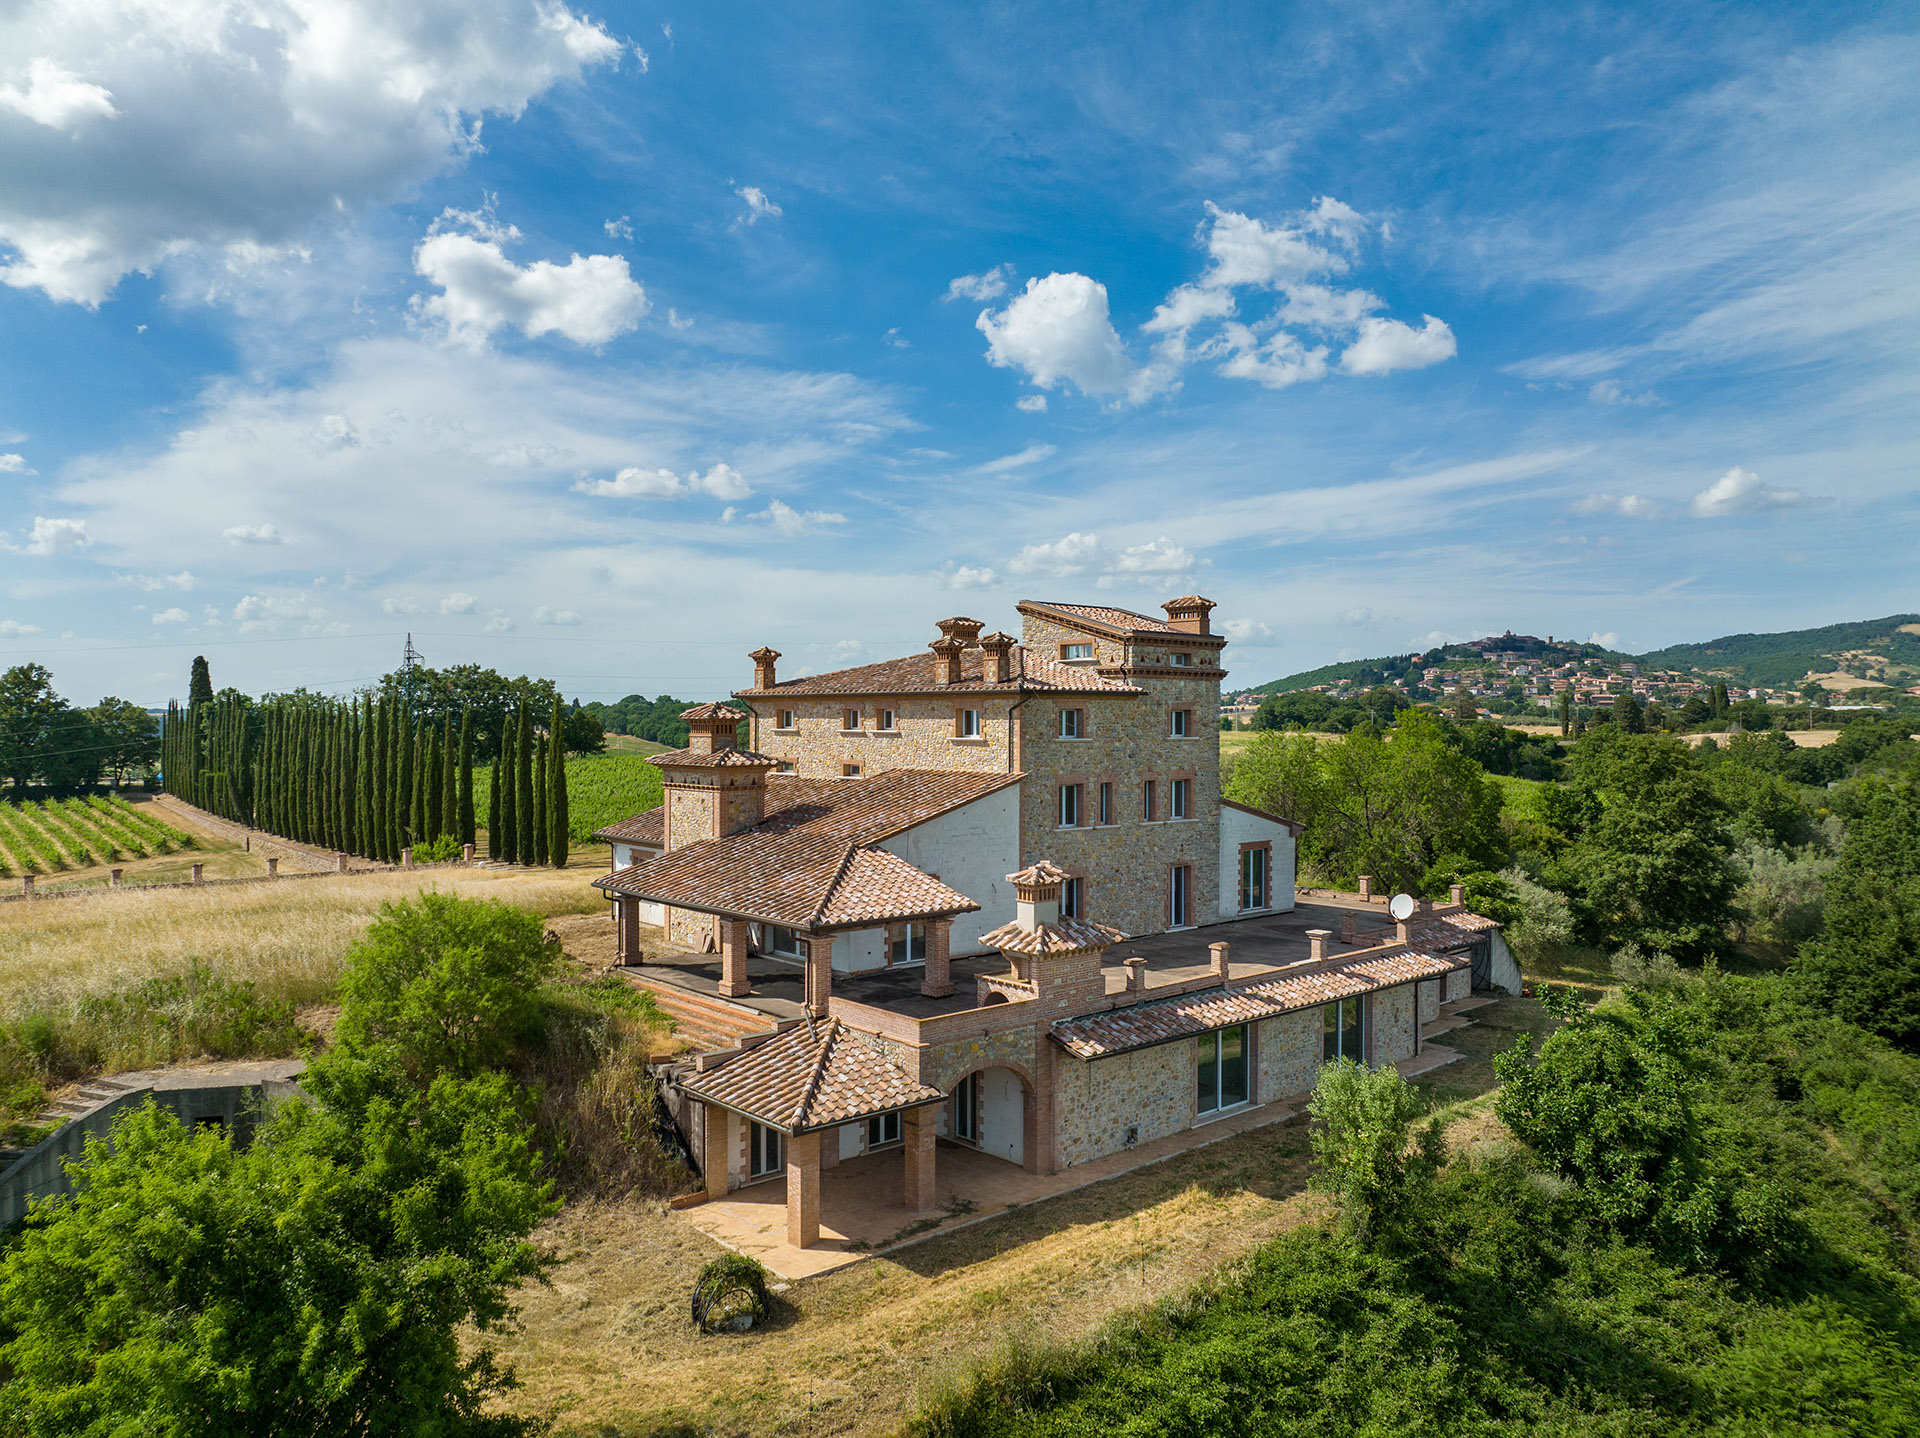 House in Perugia-Lago Trasimeno